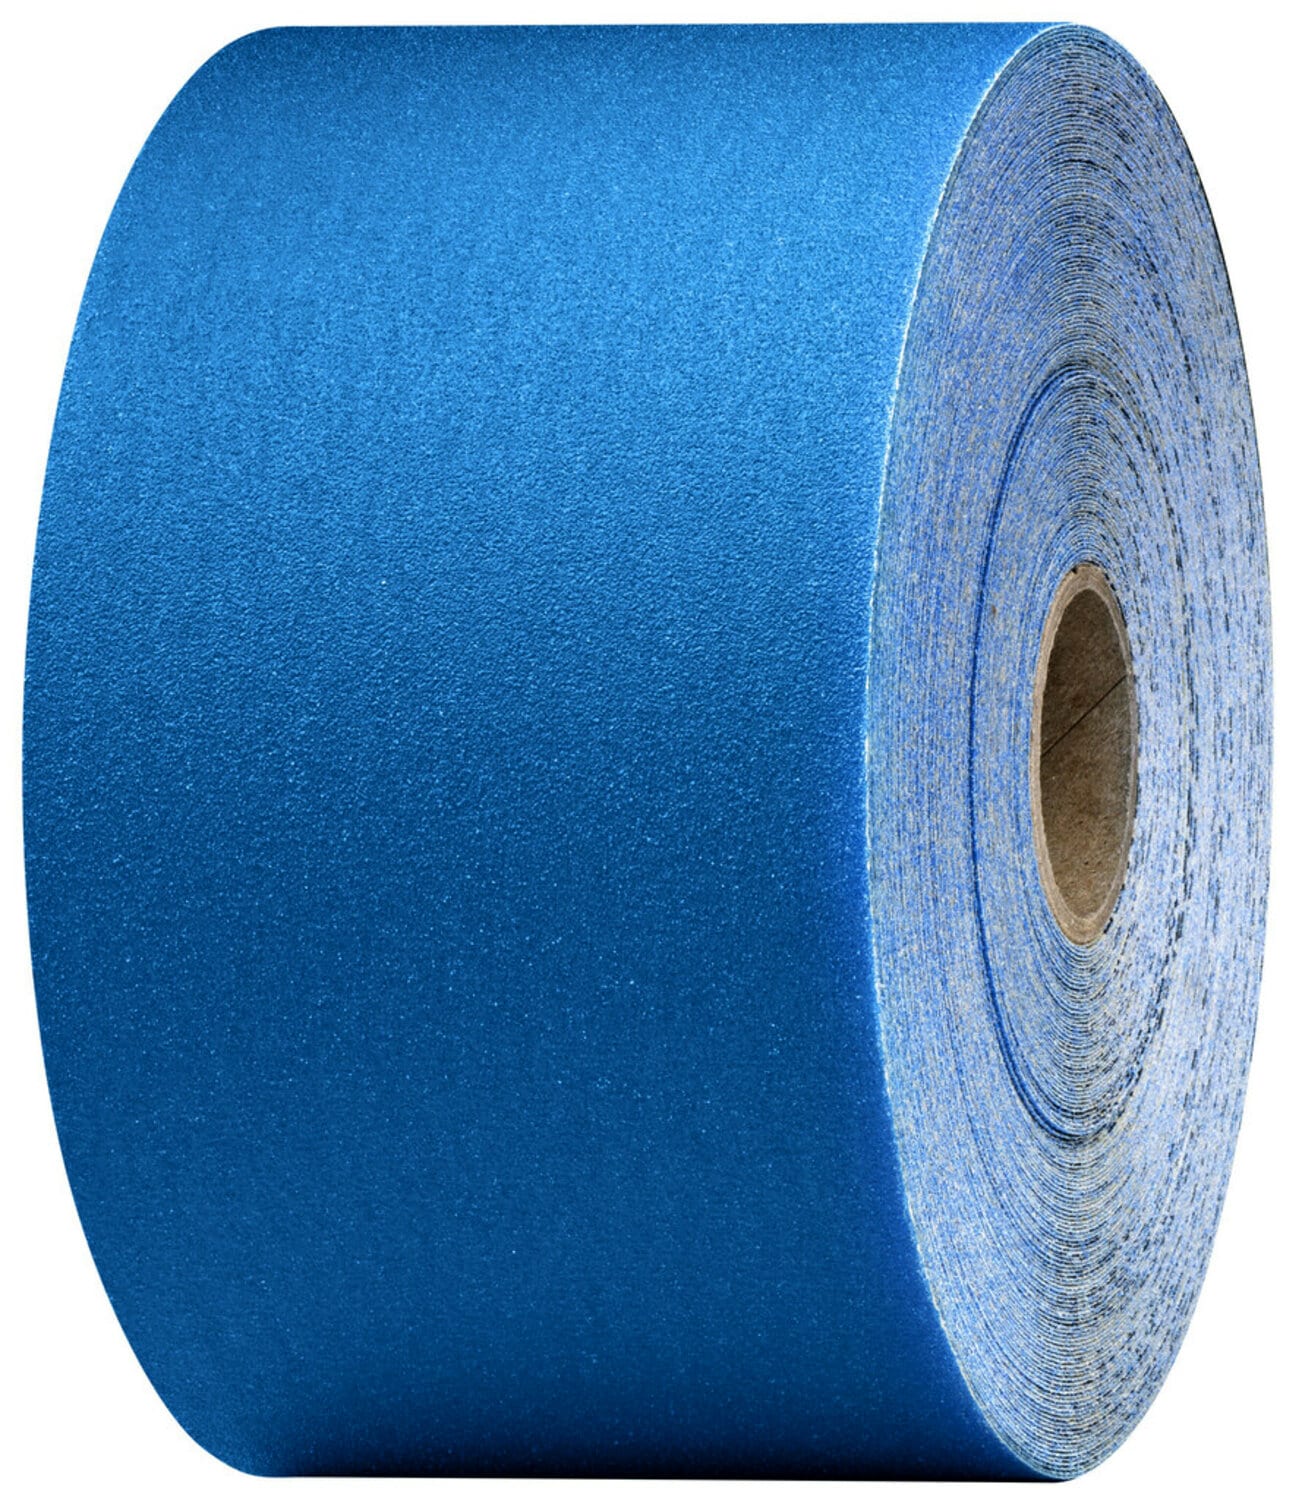 7100098215 - 3M Stikit Blue Abrasive Sheet Roll, 36228, 600, 2-3/4 in x 45 yd, 5
rolls per case